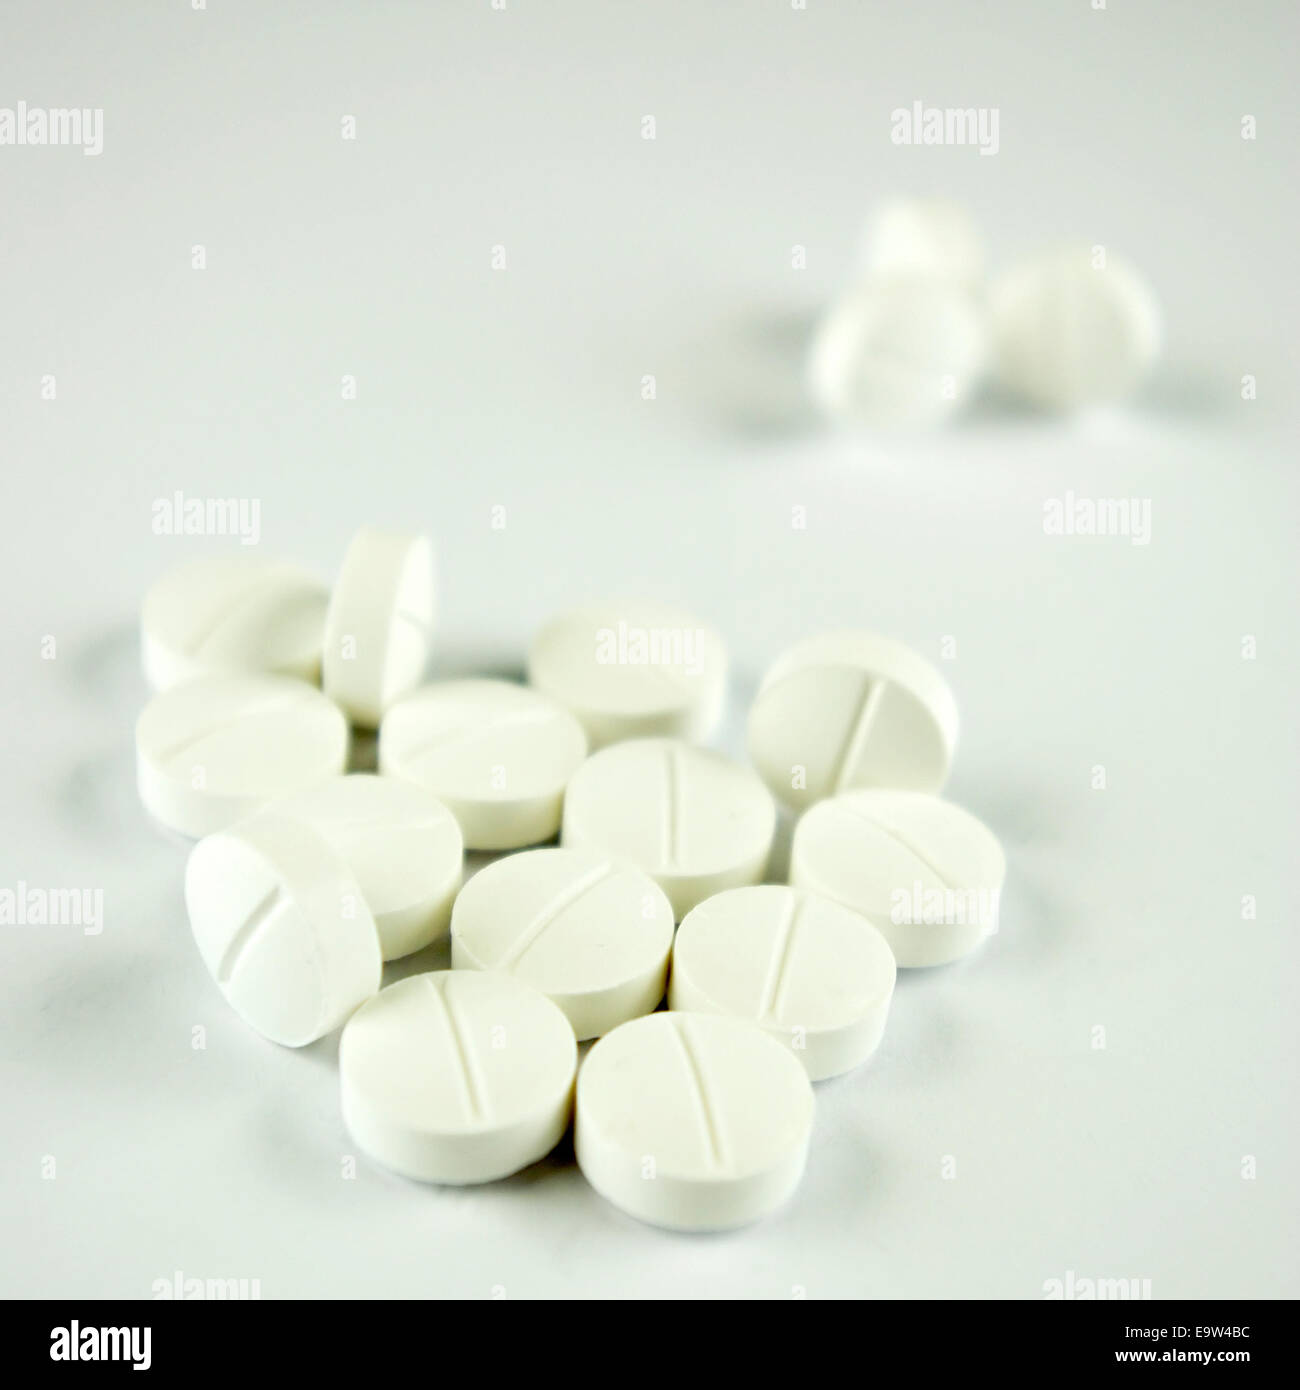 Pillen, Medikamente, Drogen, Tabletten in weiß, ausgepackt Stockfotografie  - Alamy